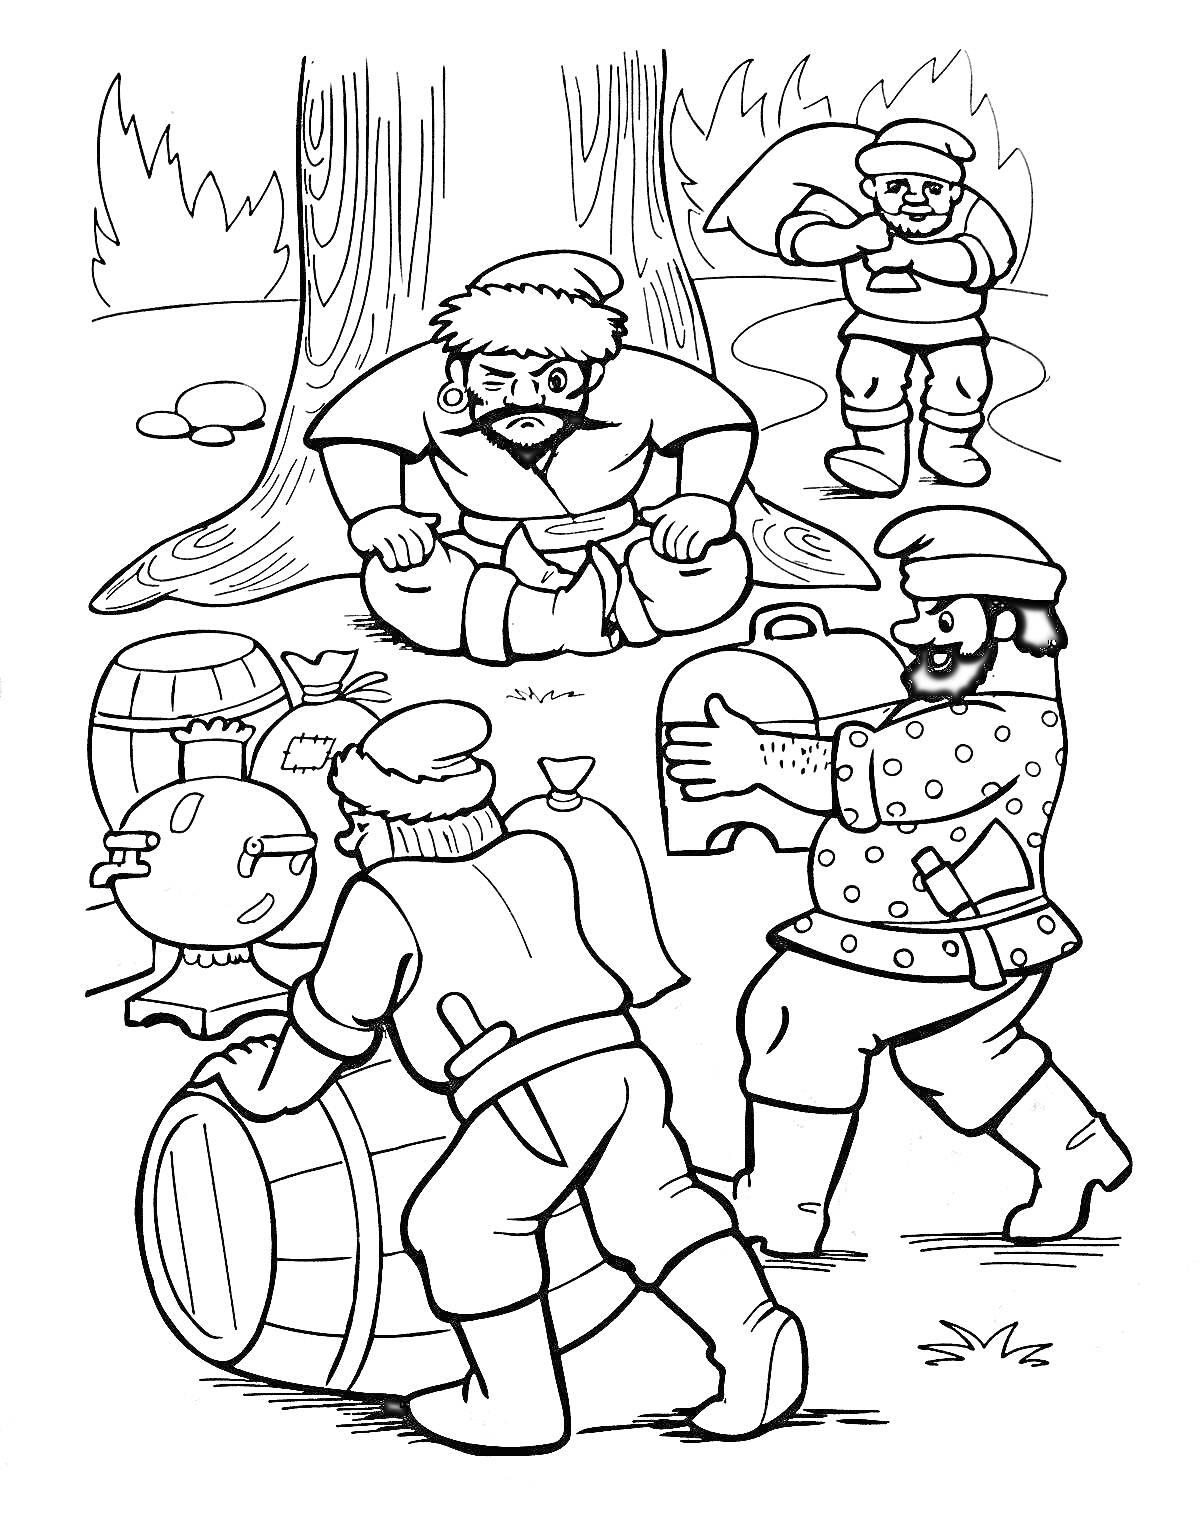  Бандиты в лесу с награбленным: дерево, кусты, бочки, сундук, мешок, мужчины в шапках и куртках